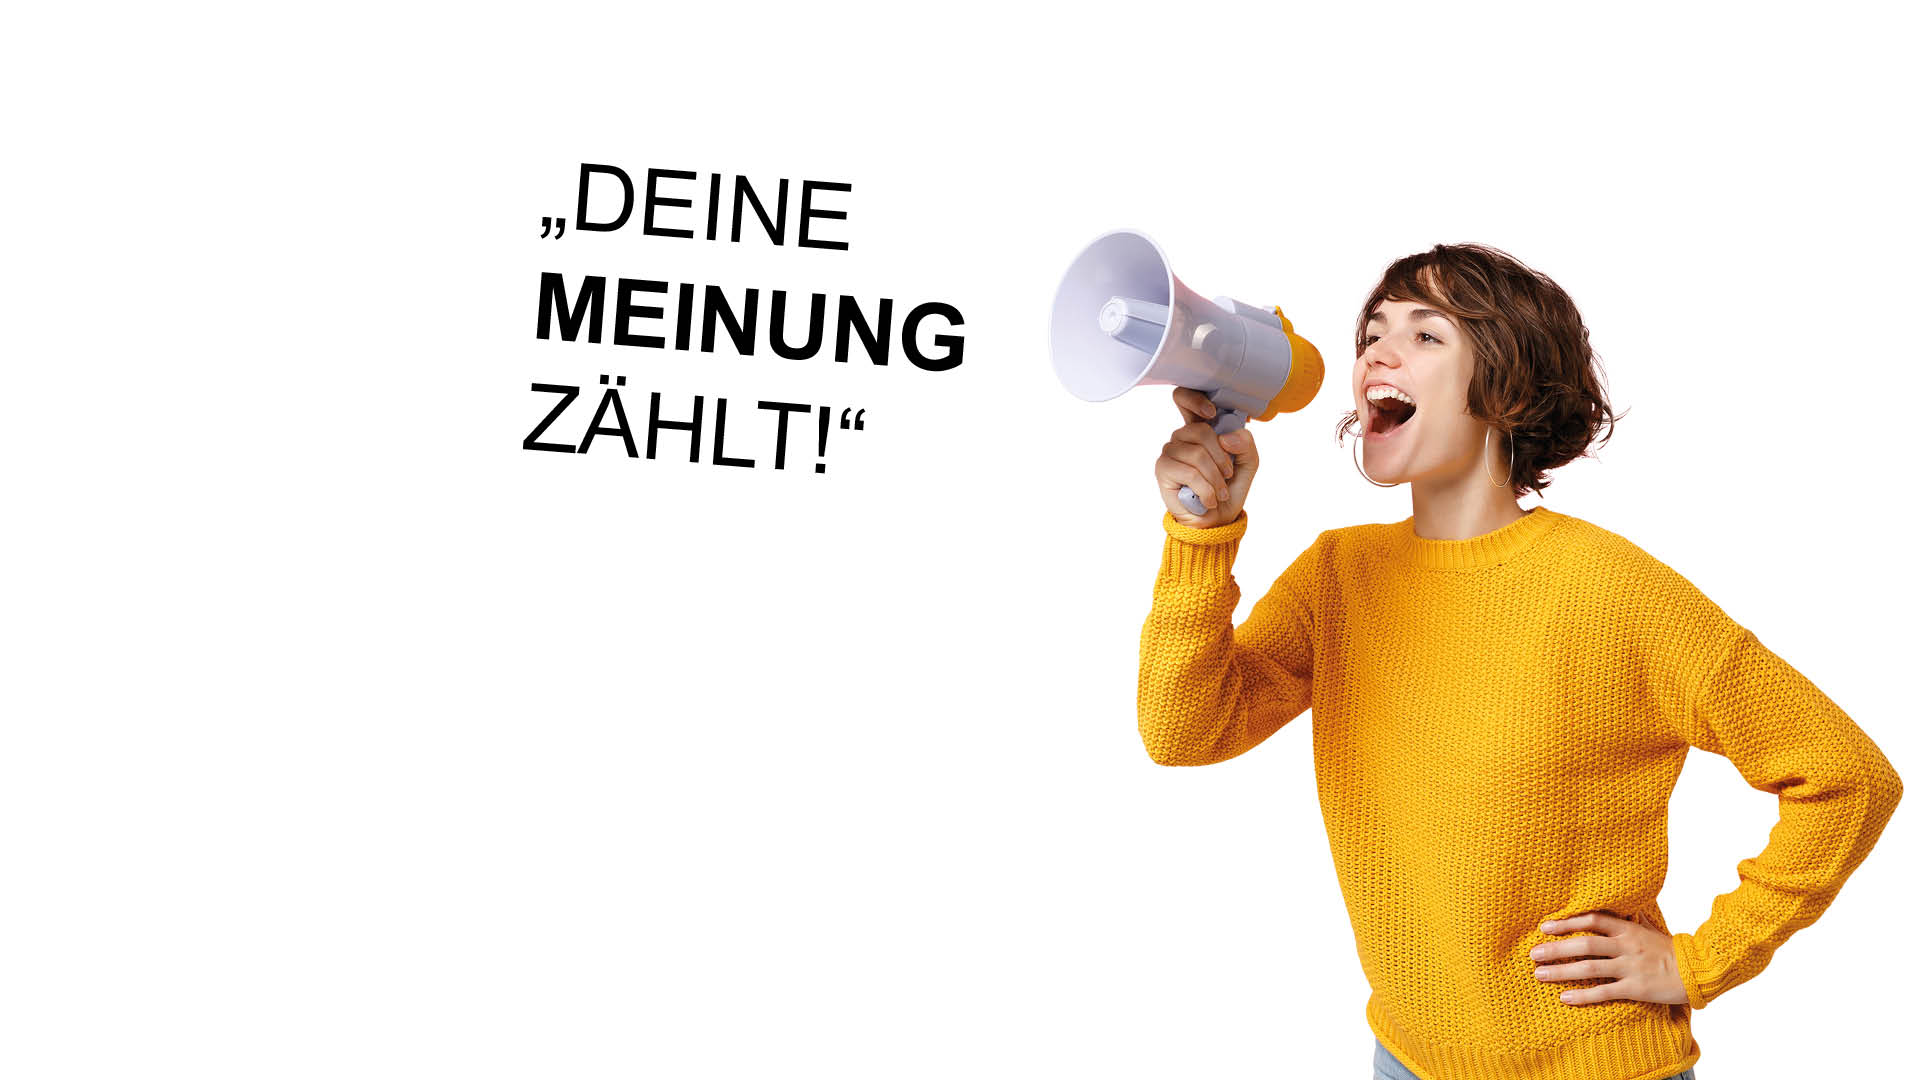 Frau im Gelben Pulli ruft in ein Megaphone "Deine Meinung zählt"